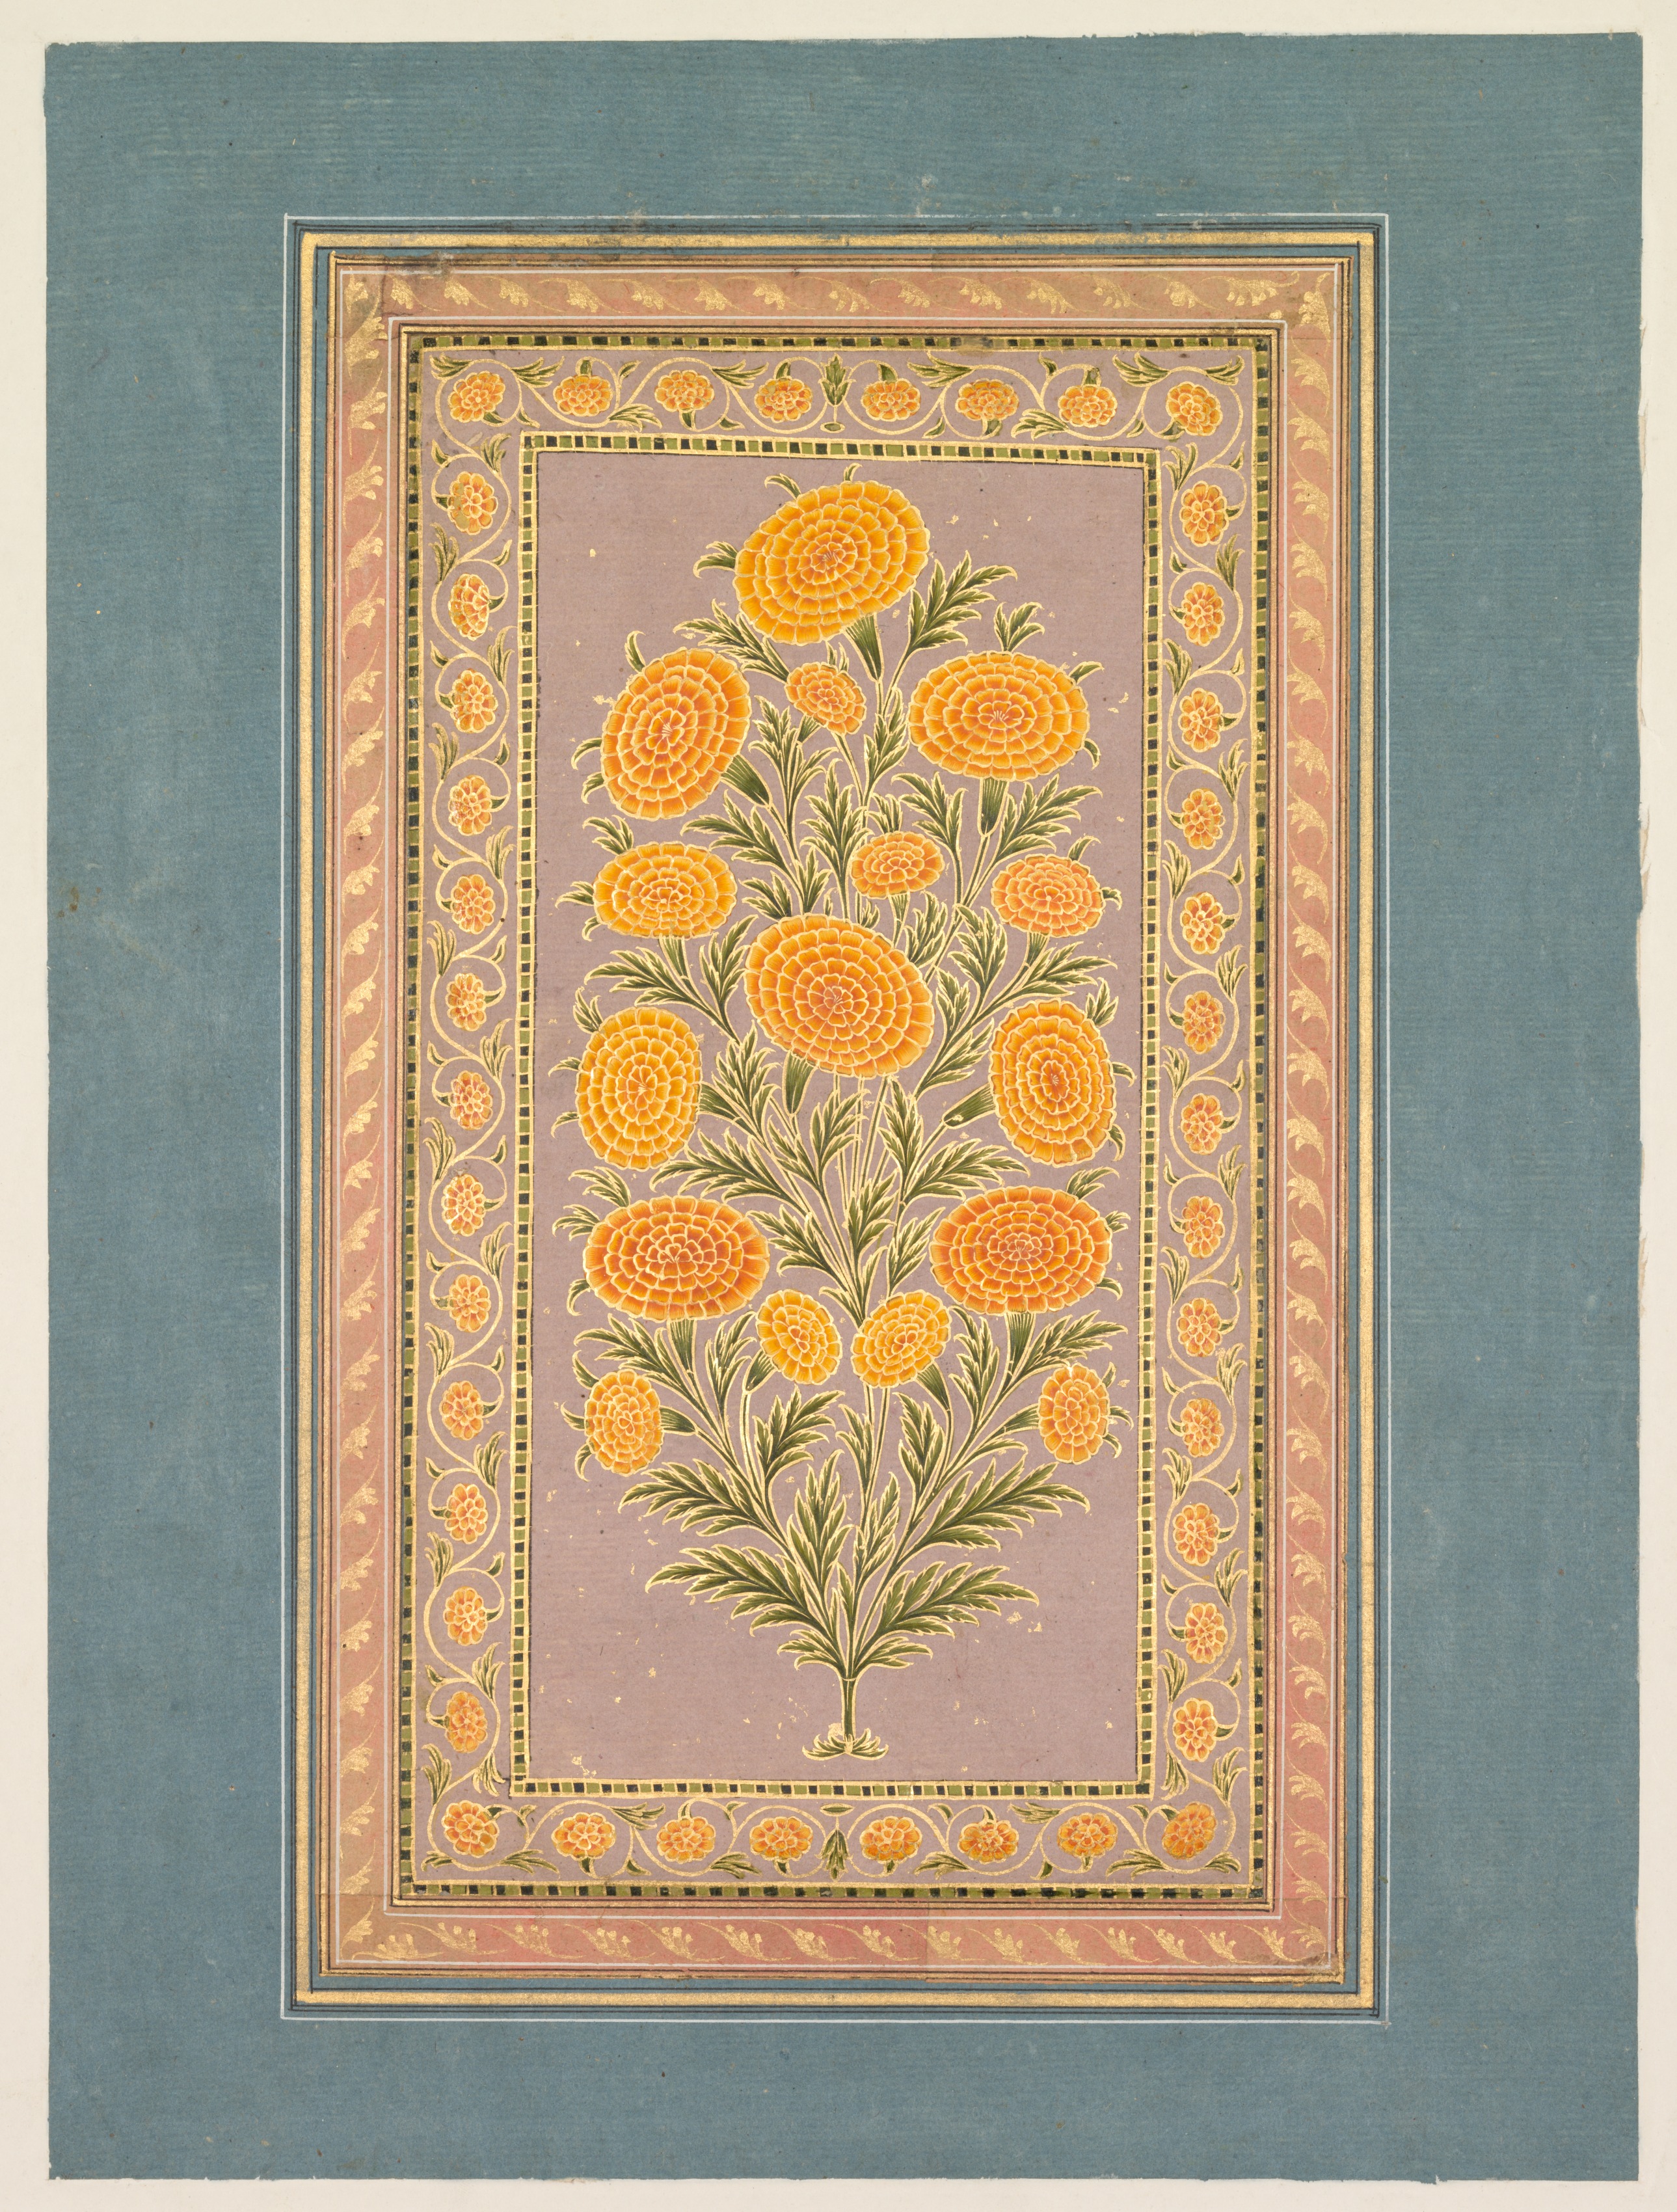 꽃이 만발한 매리골드 by Unknown Artist - 1765년경 - 33.1 x 24.9 cm 